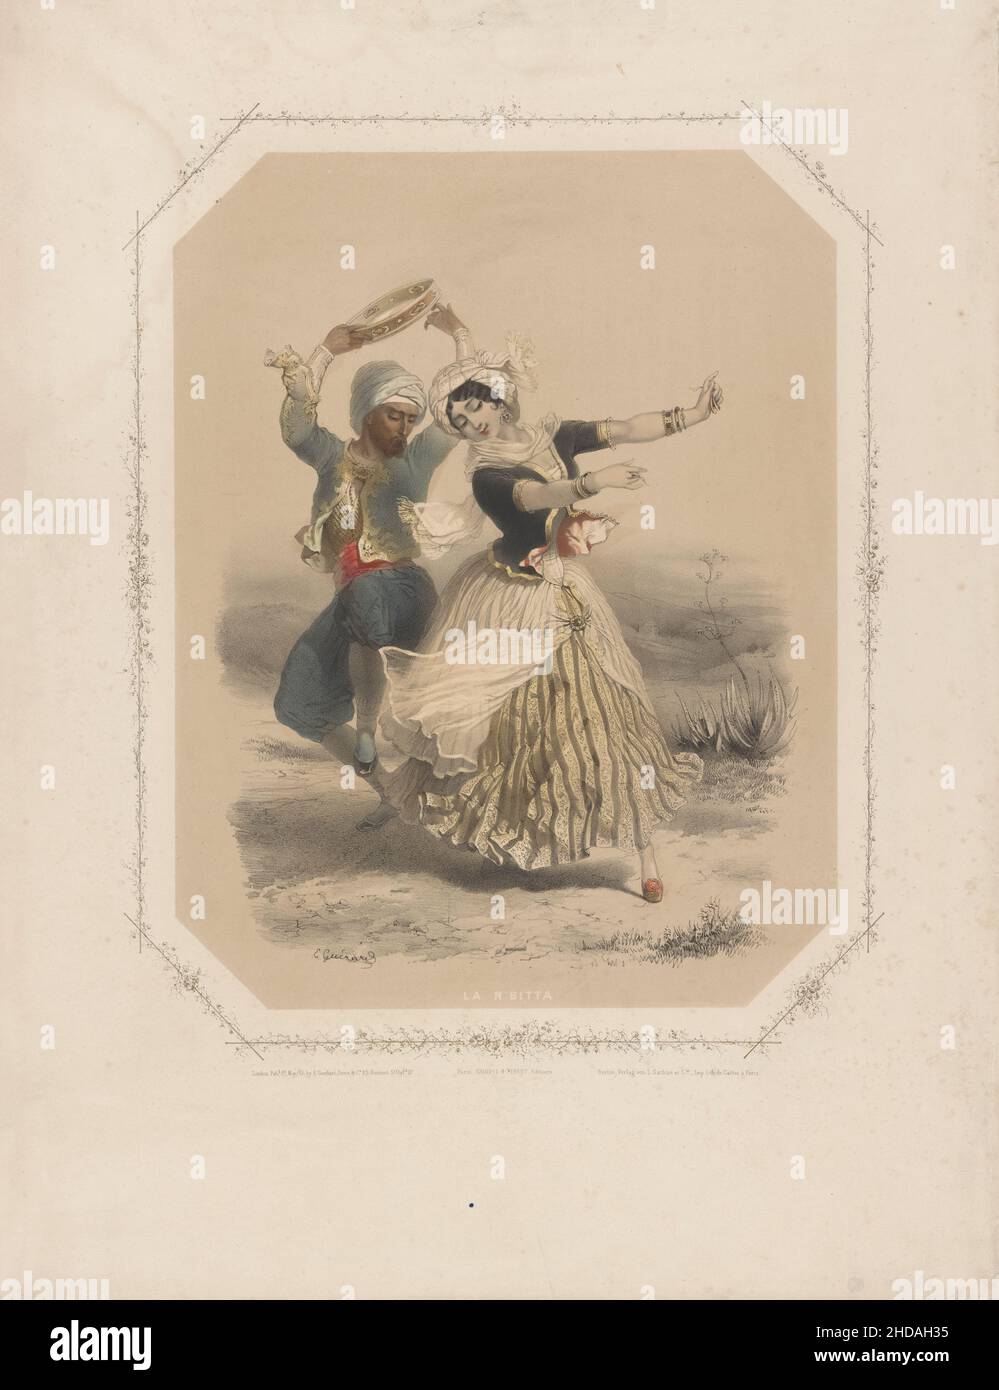 Eine alte Farblithographie, die den türkischen Volkstanz darstellt. Osmanisches Reich. Stockfoto